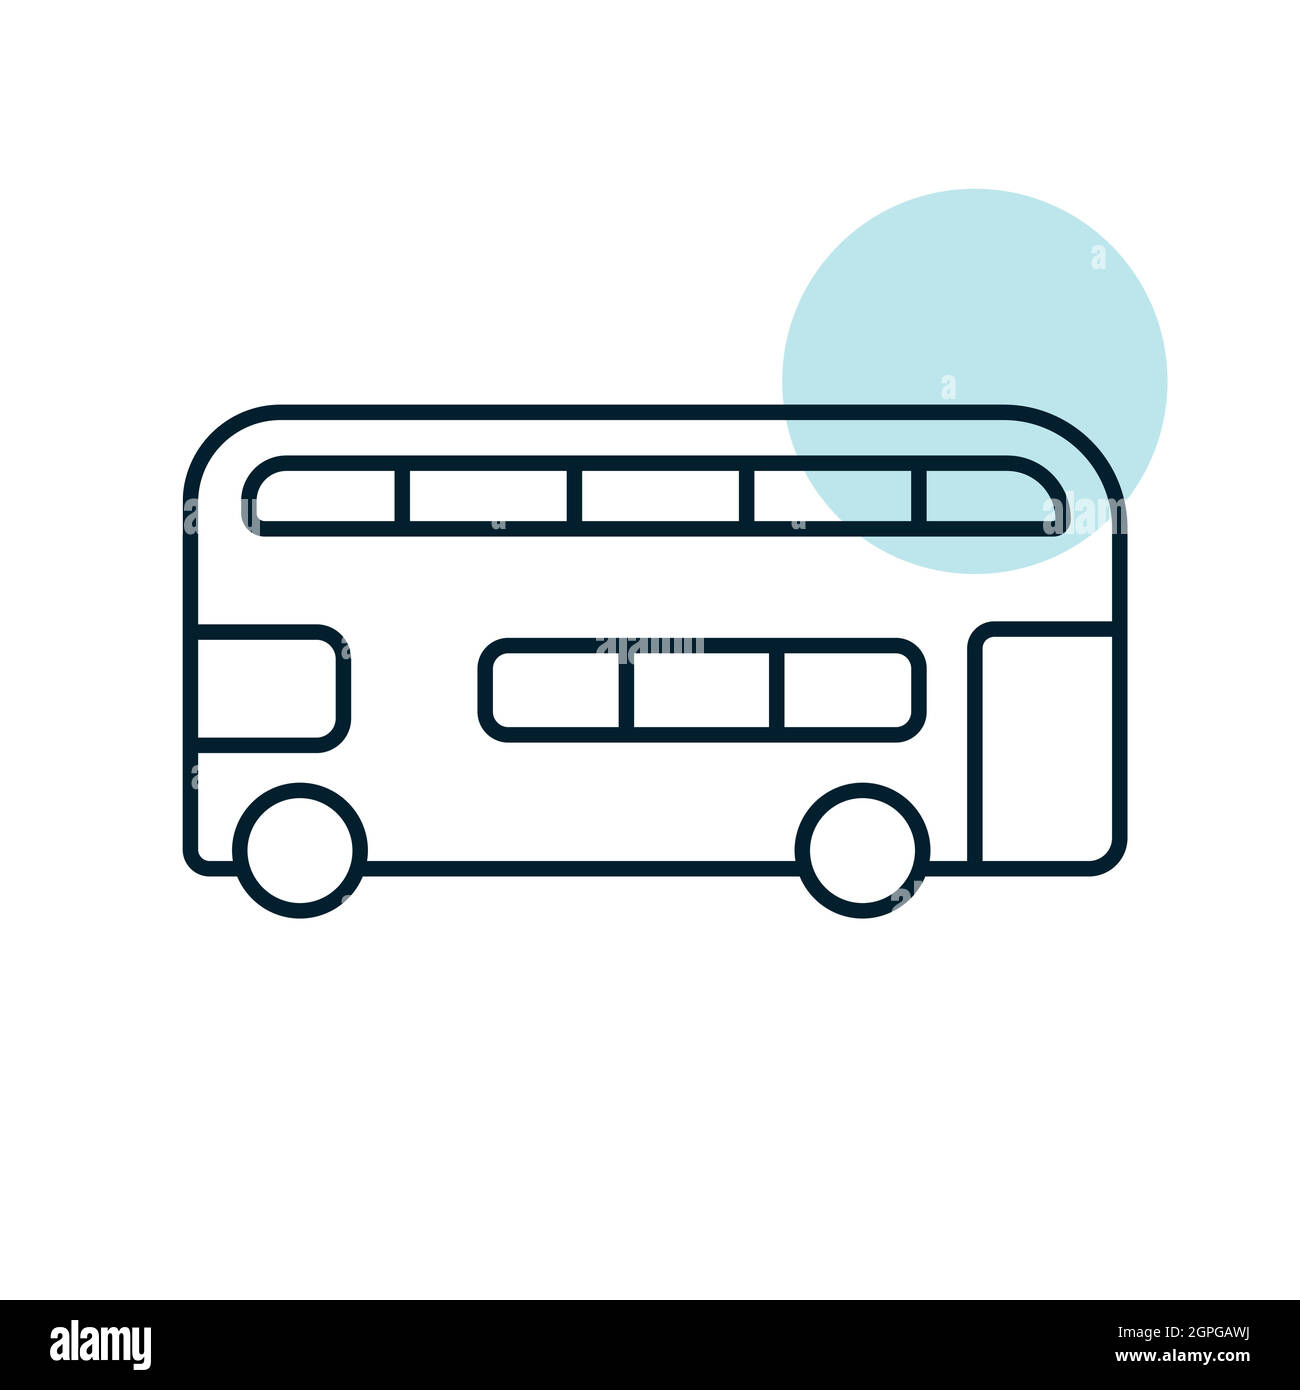 Double Decker Bus Ilustración del Vector